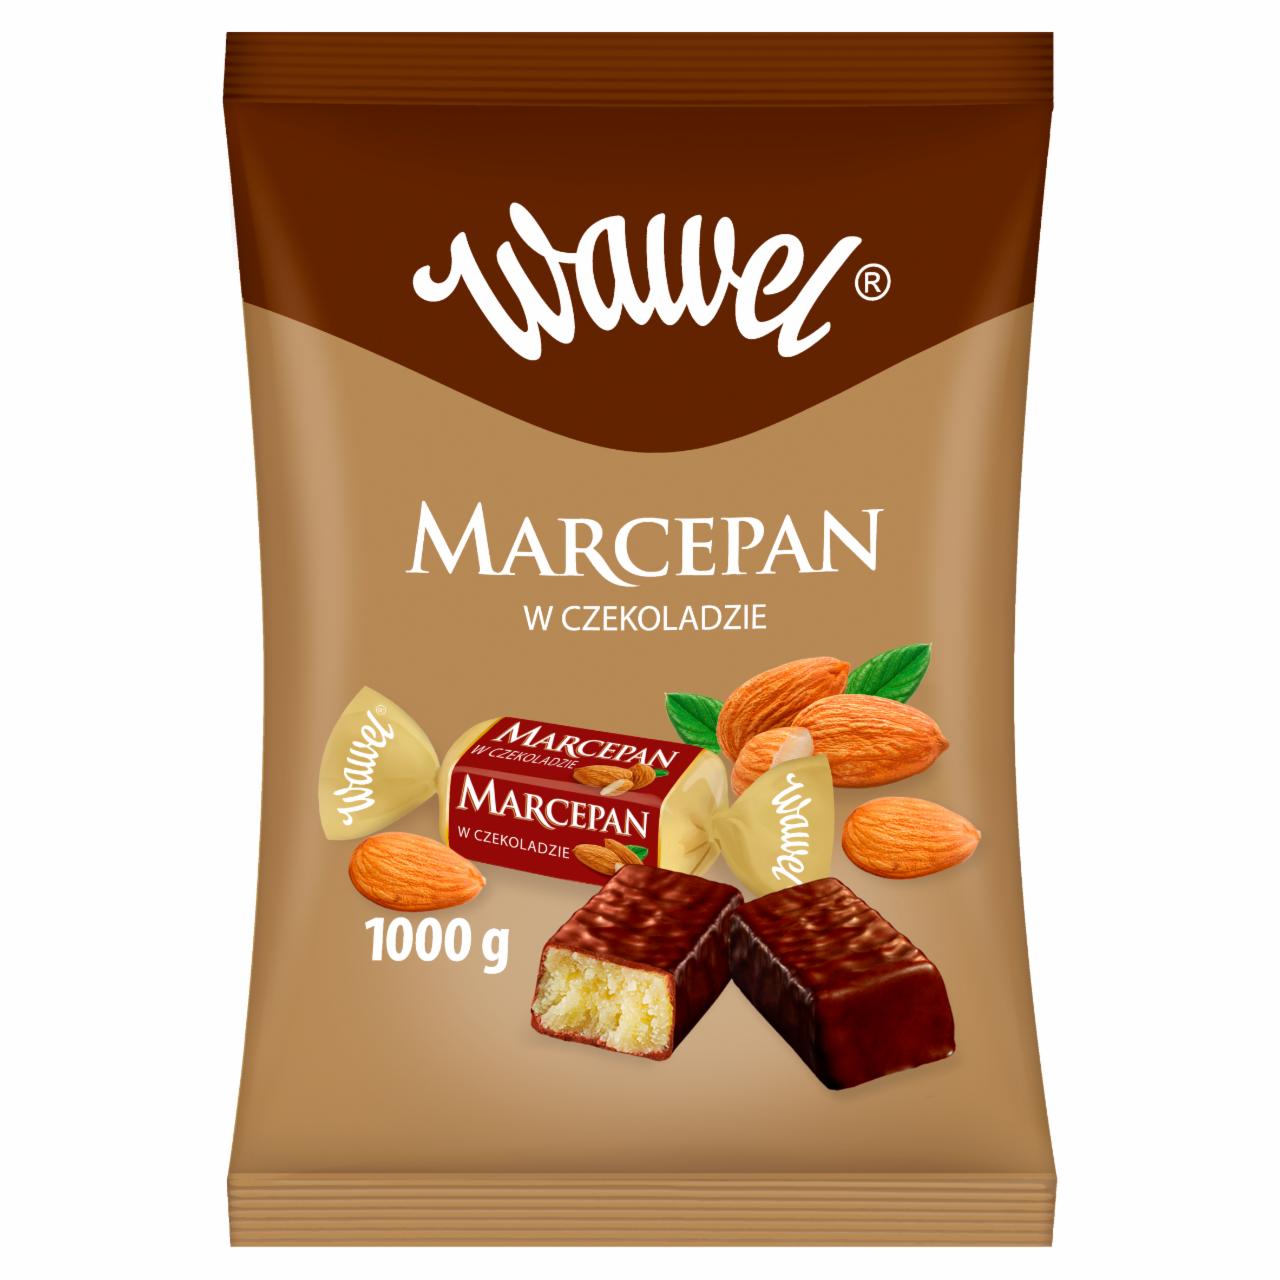 Zdjęcia - Wawel Marcepan w czekoladzie 1000 g